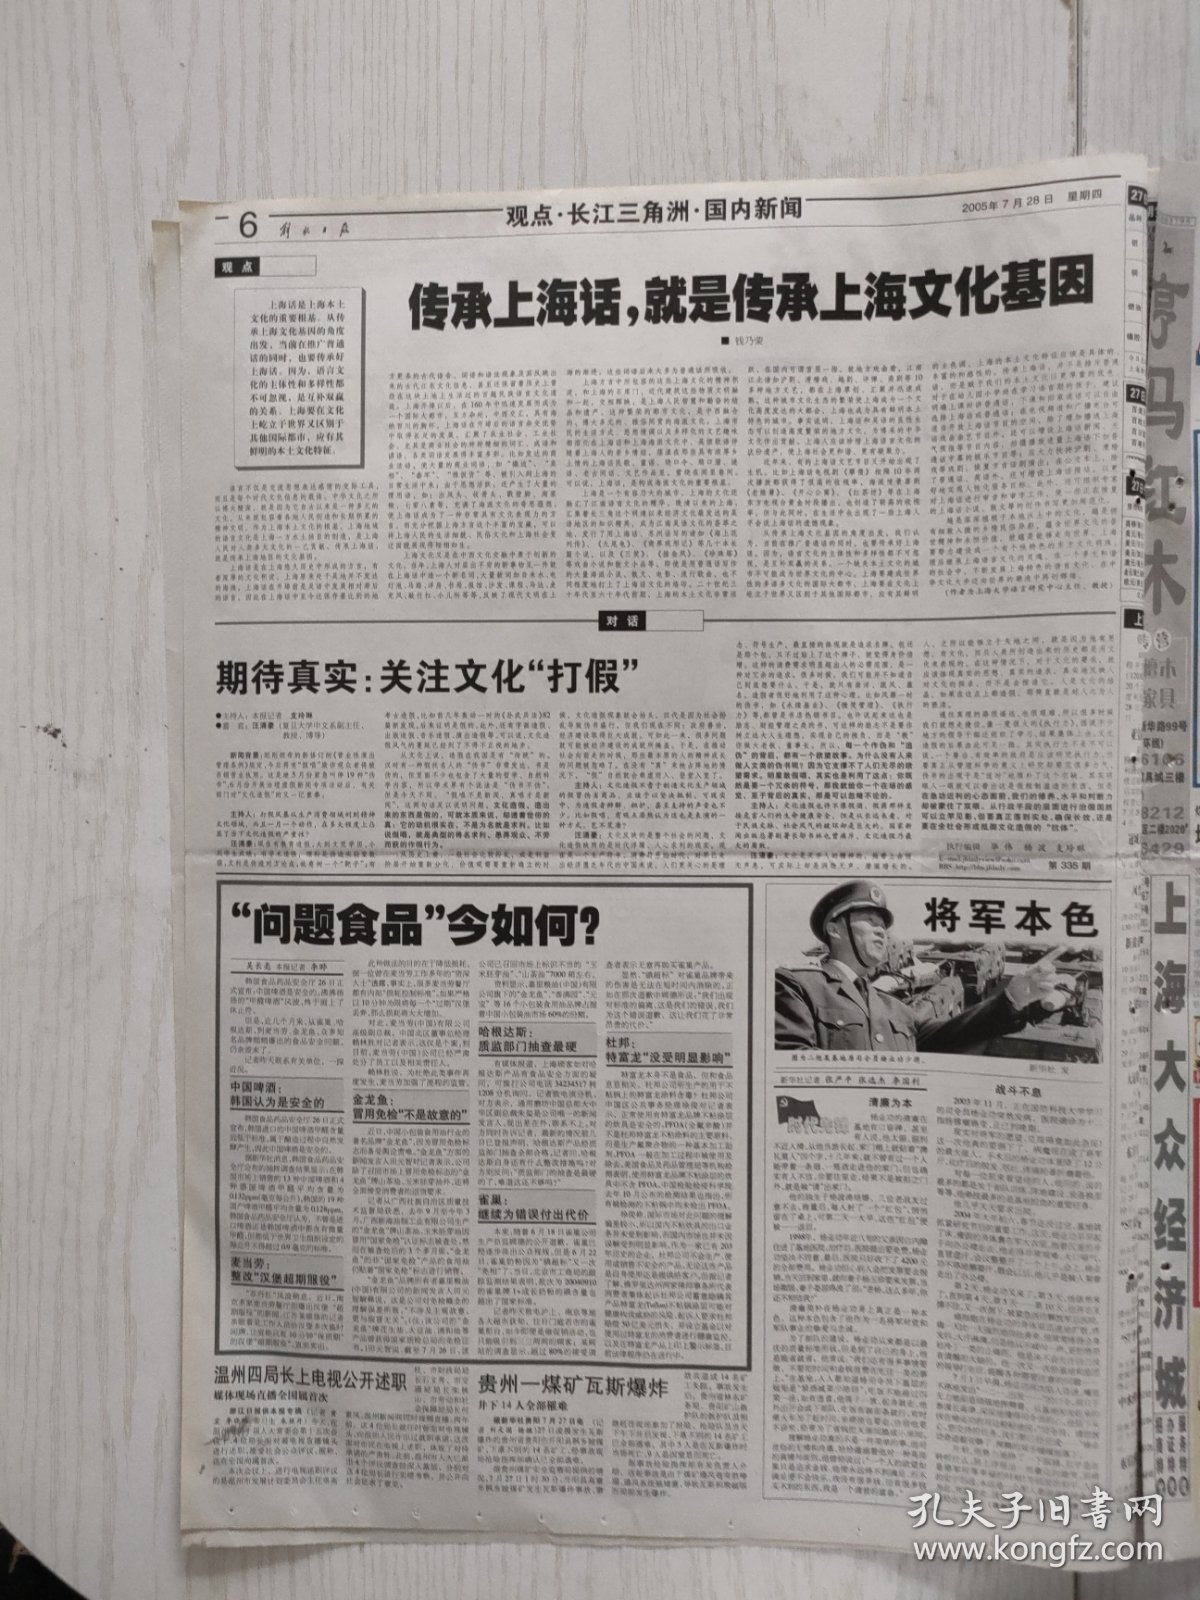 解放日报2005年7月28日12版全，深情缅怀小平同志丰功伟绩。上海画师挥笔在线抗战历史。